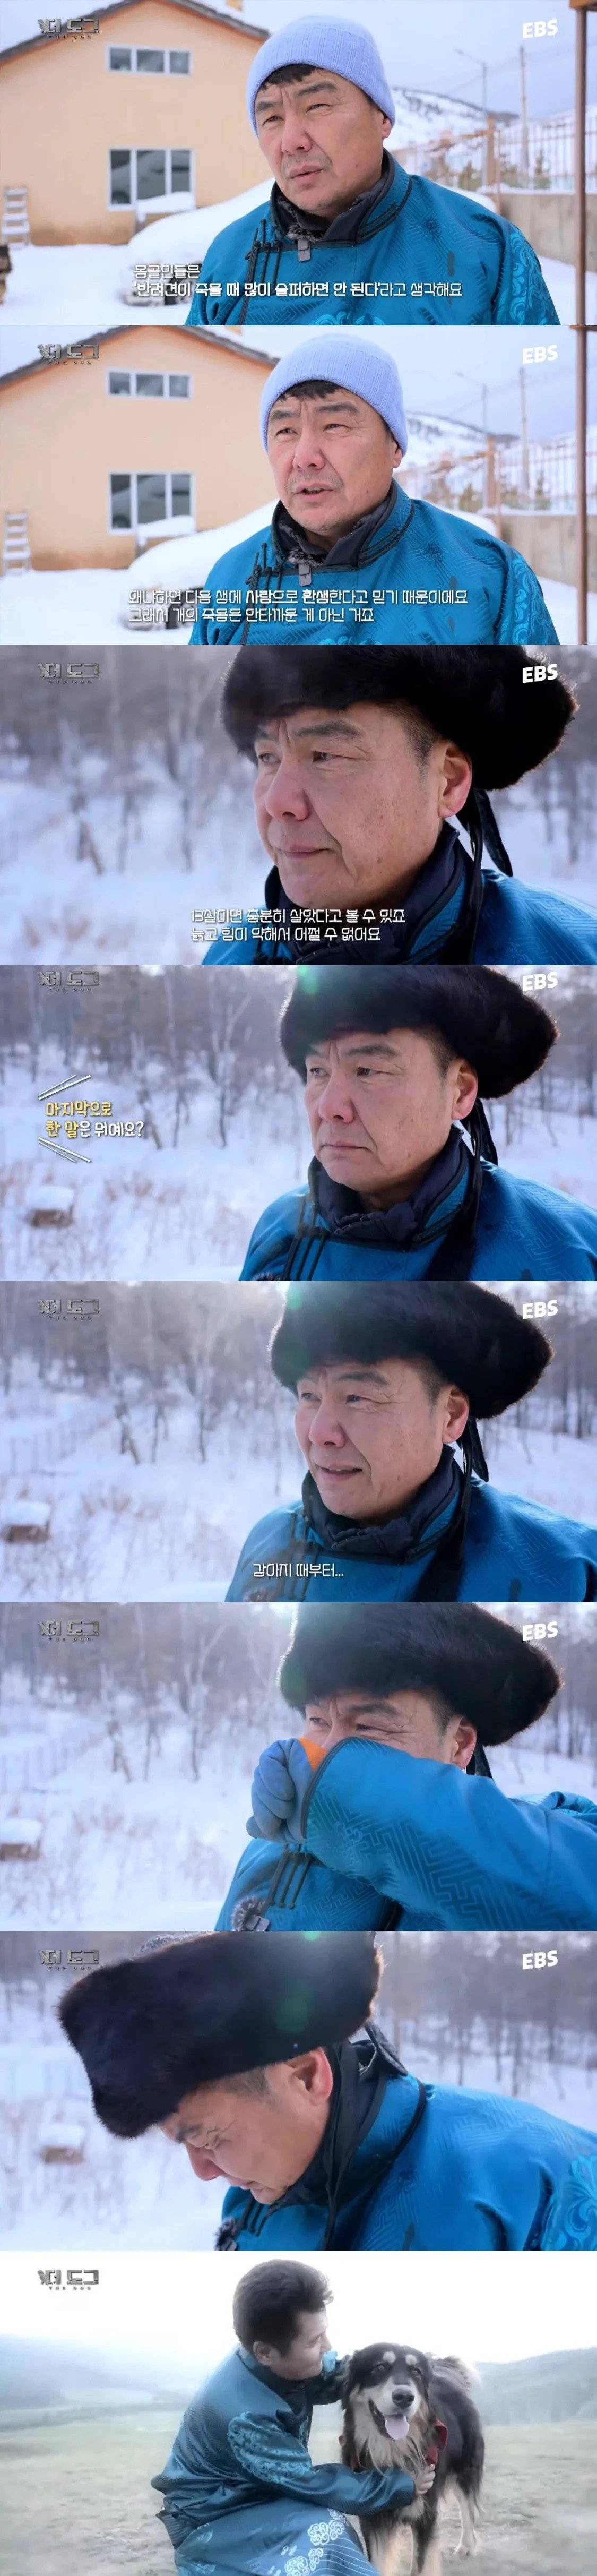 반려견 죽을 때 많이 슬퍼하면 안된다는 몽골인들